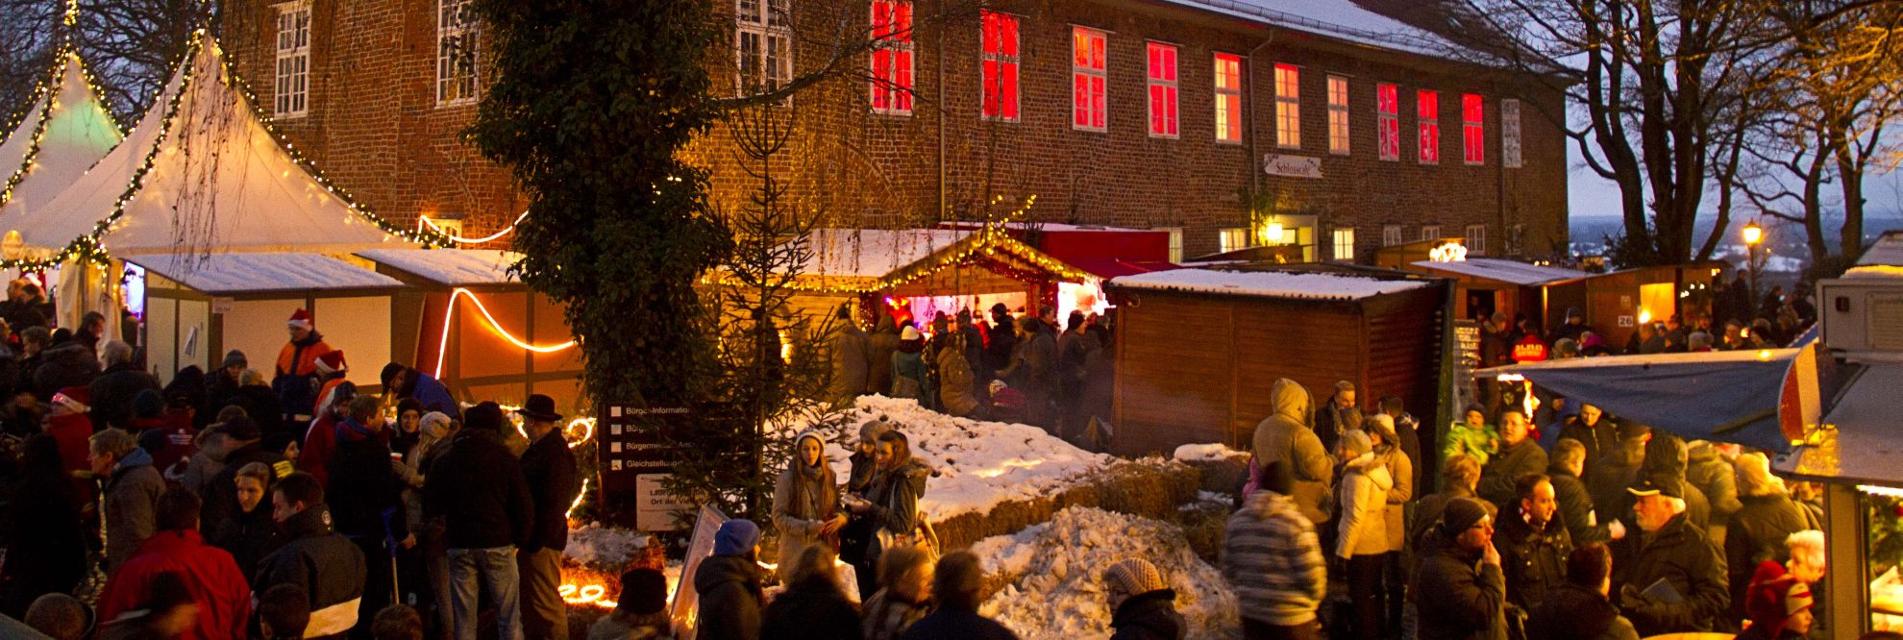 Einer der schönsten Weihnachtsmärkte im Norden vor traumhafter KulisseLauenburger Weihnachtsmarkt am Schloss Bald ist es wieder soweit, der Weihnachtsmarkt 2023 am Lauenburger Schloss öffnet seine Pforten. Einer der schönsten Weihnachtsmärkte i...